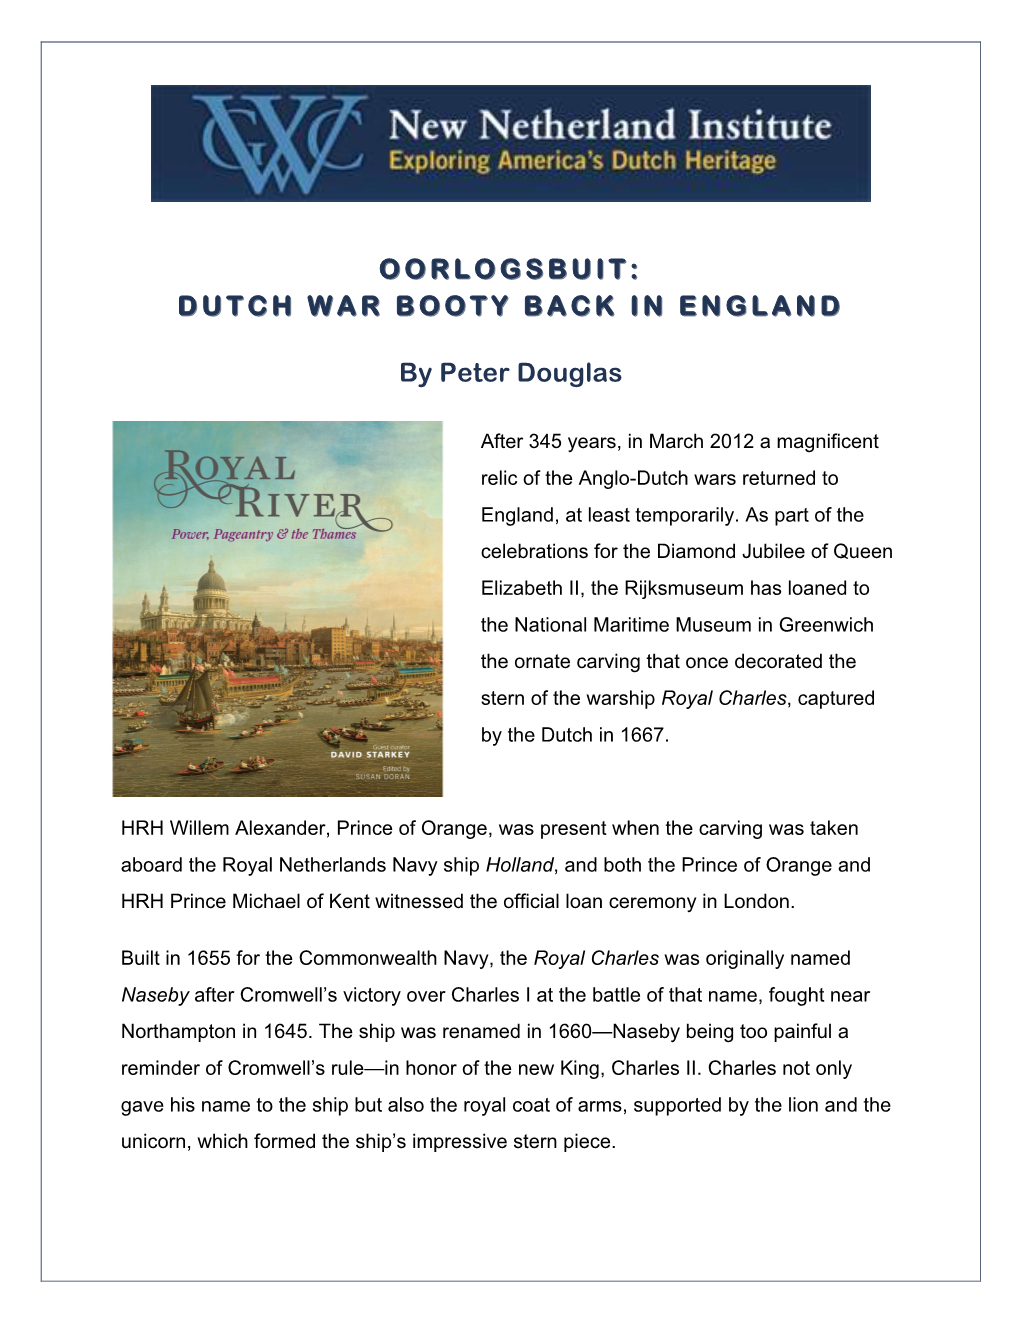 Dutch War Booty Back in England